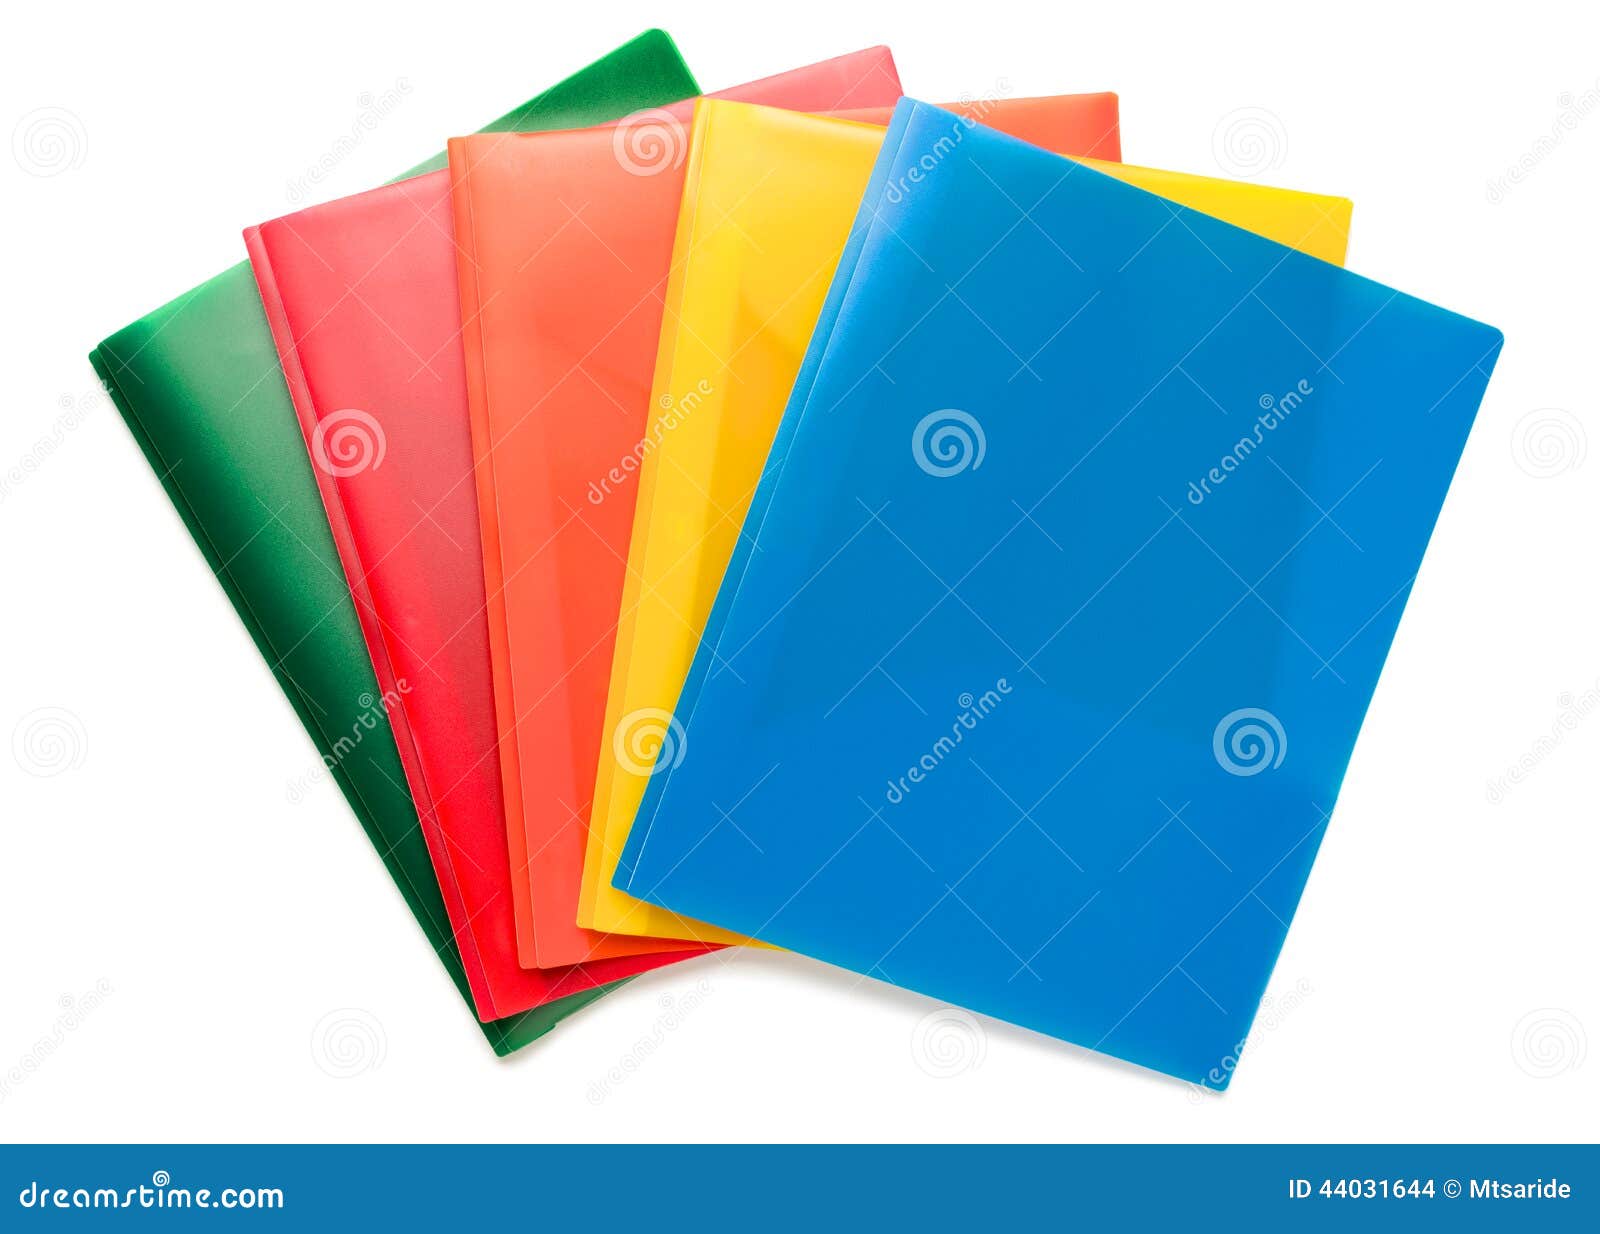 multi-colored document folders